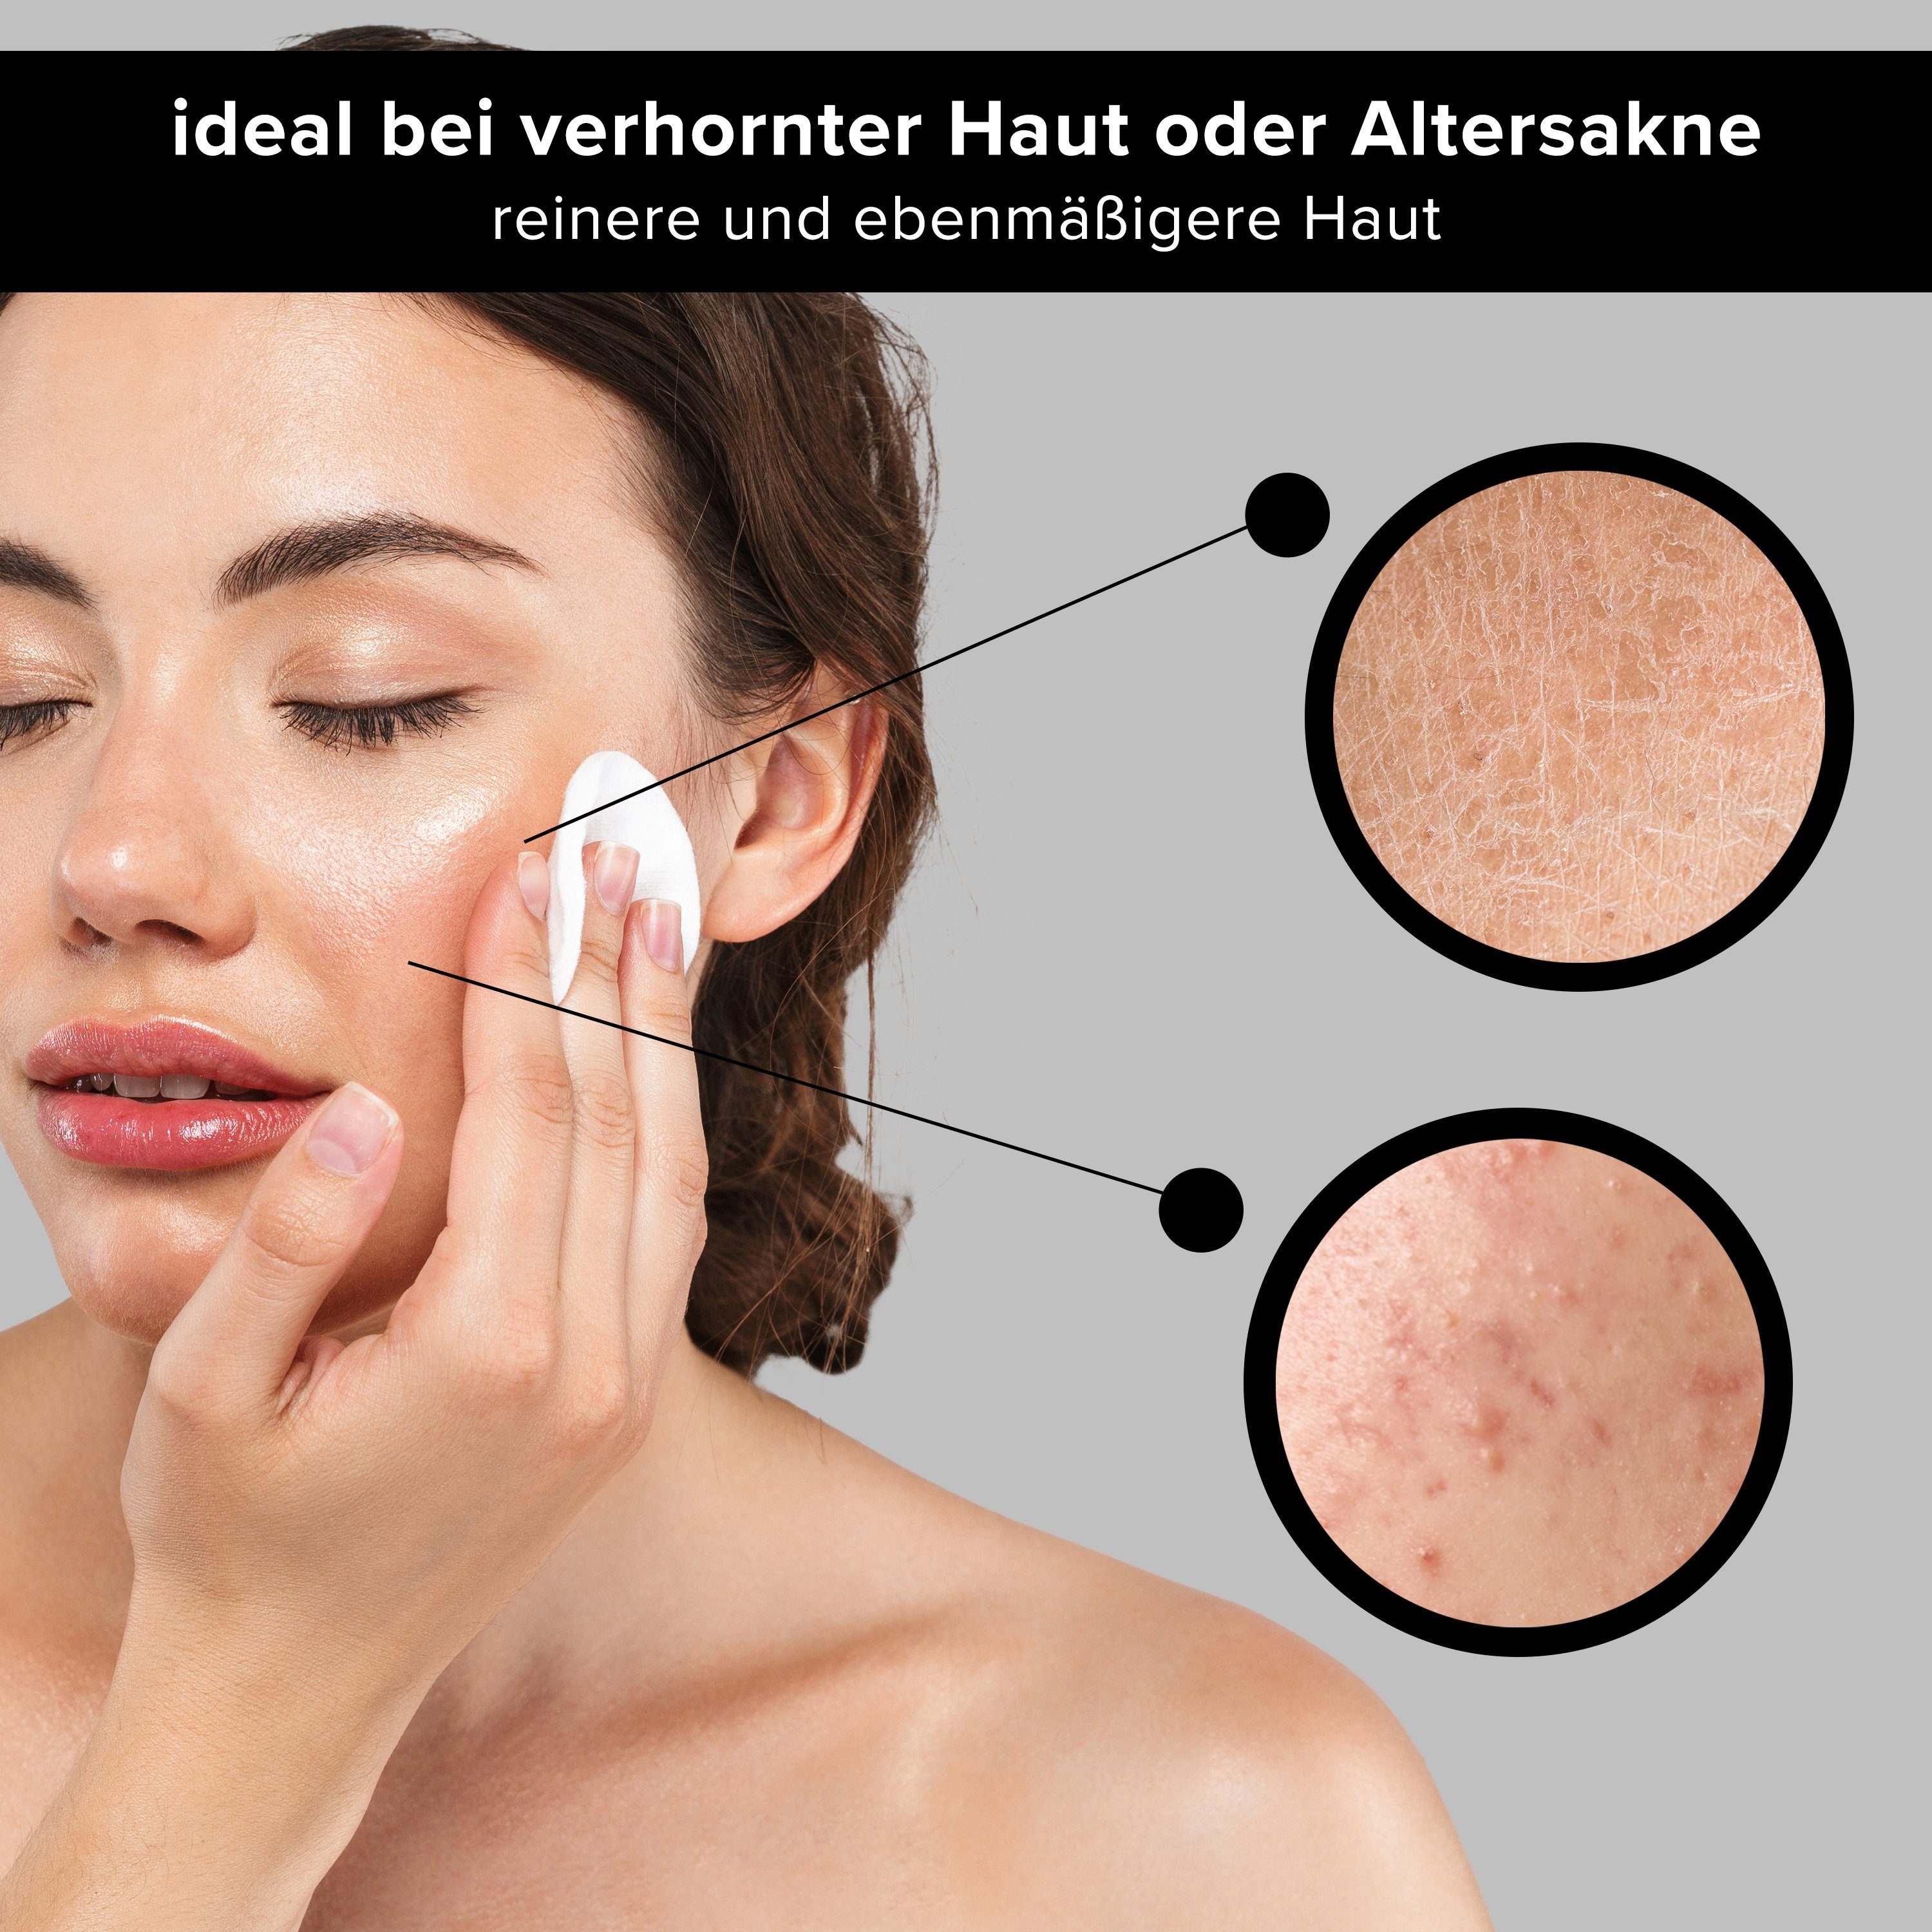 RAU Cosmetics & AHA Gesichtsreinigung Gesichtswasser - Gesichtsreinigung Toner Unreinheiten Poren, gegen Fruchtsäure